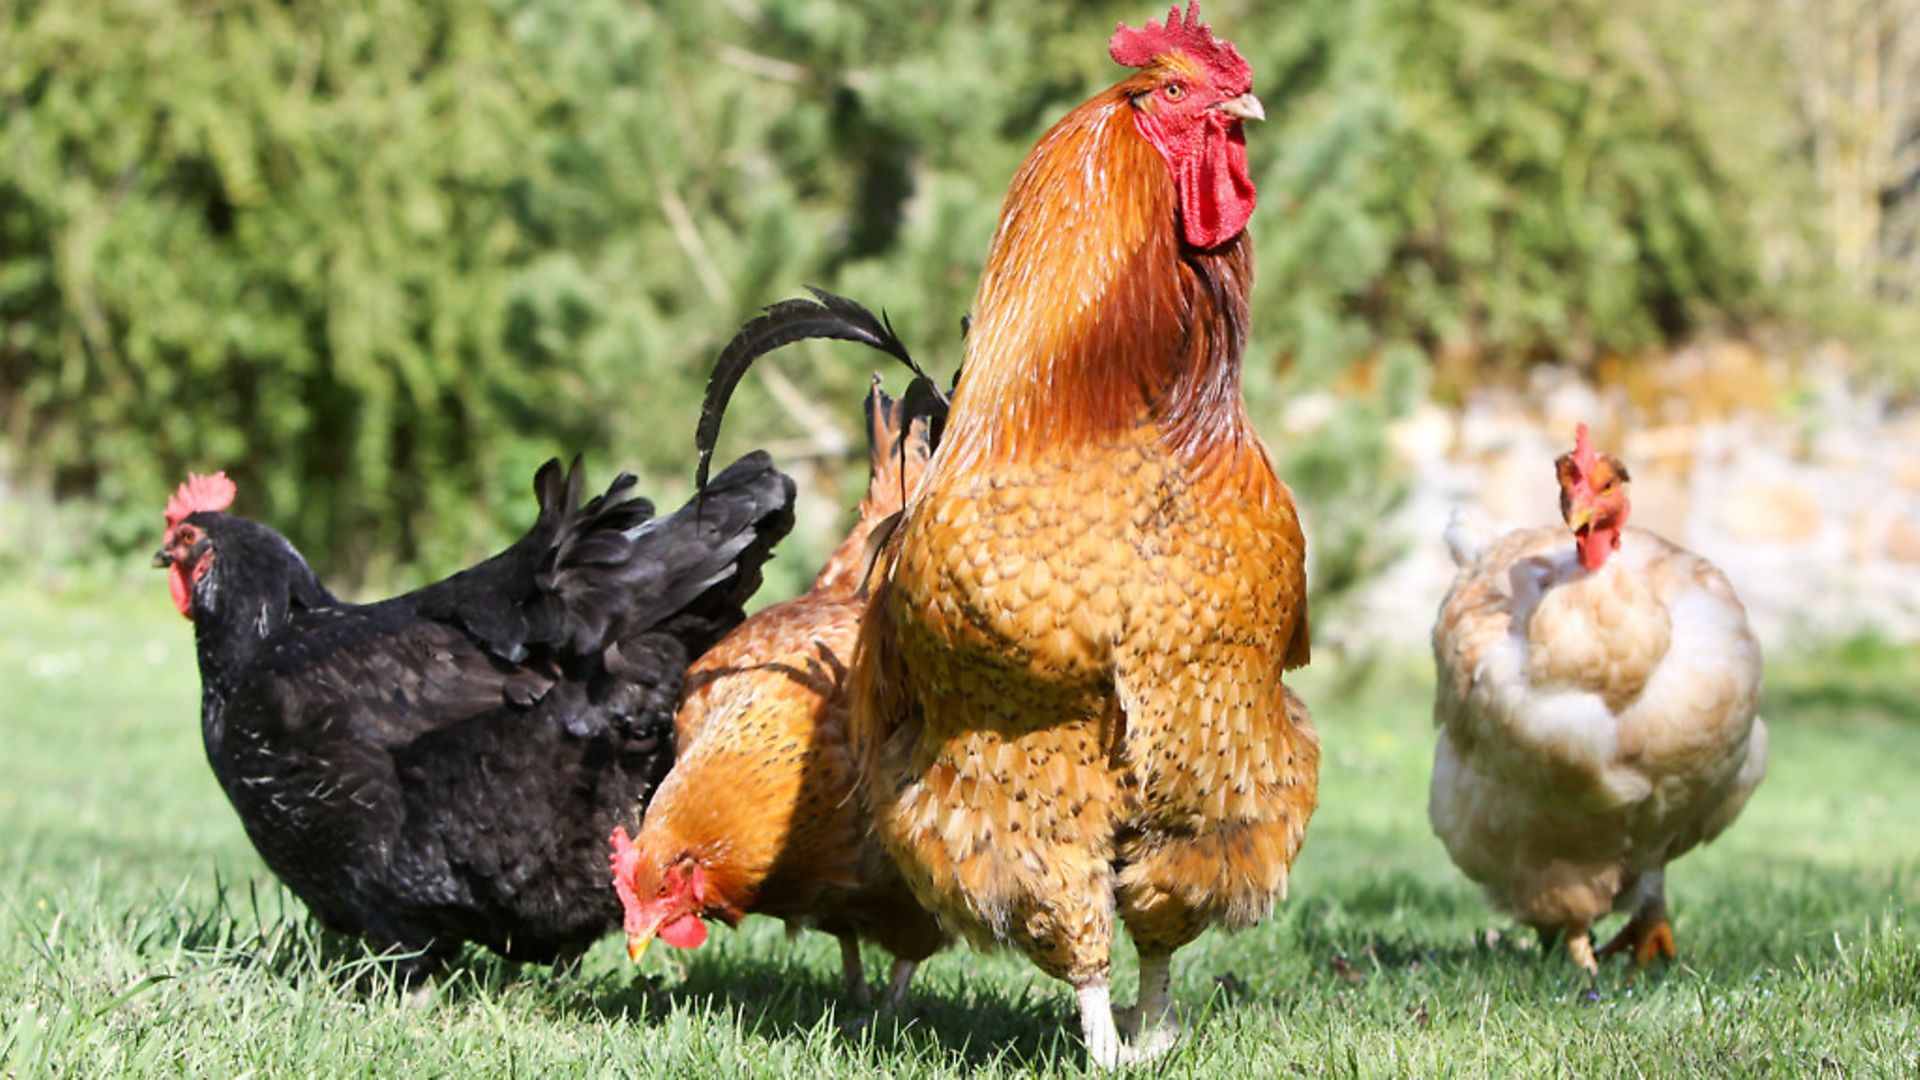 IV. Dominance Hierarchy in Hen Flocks